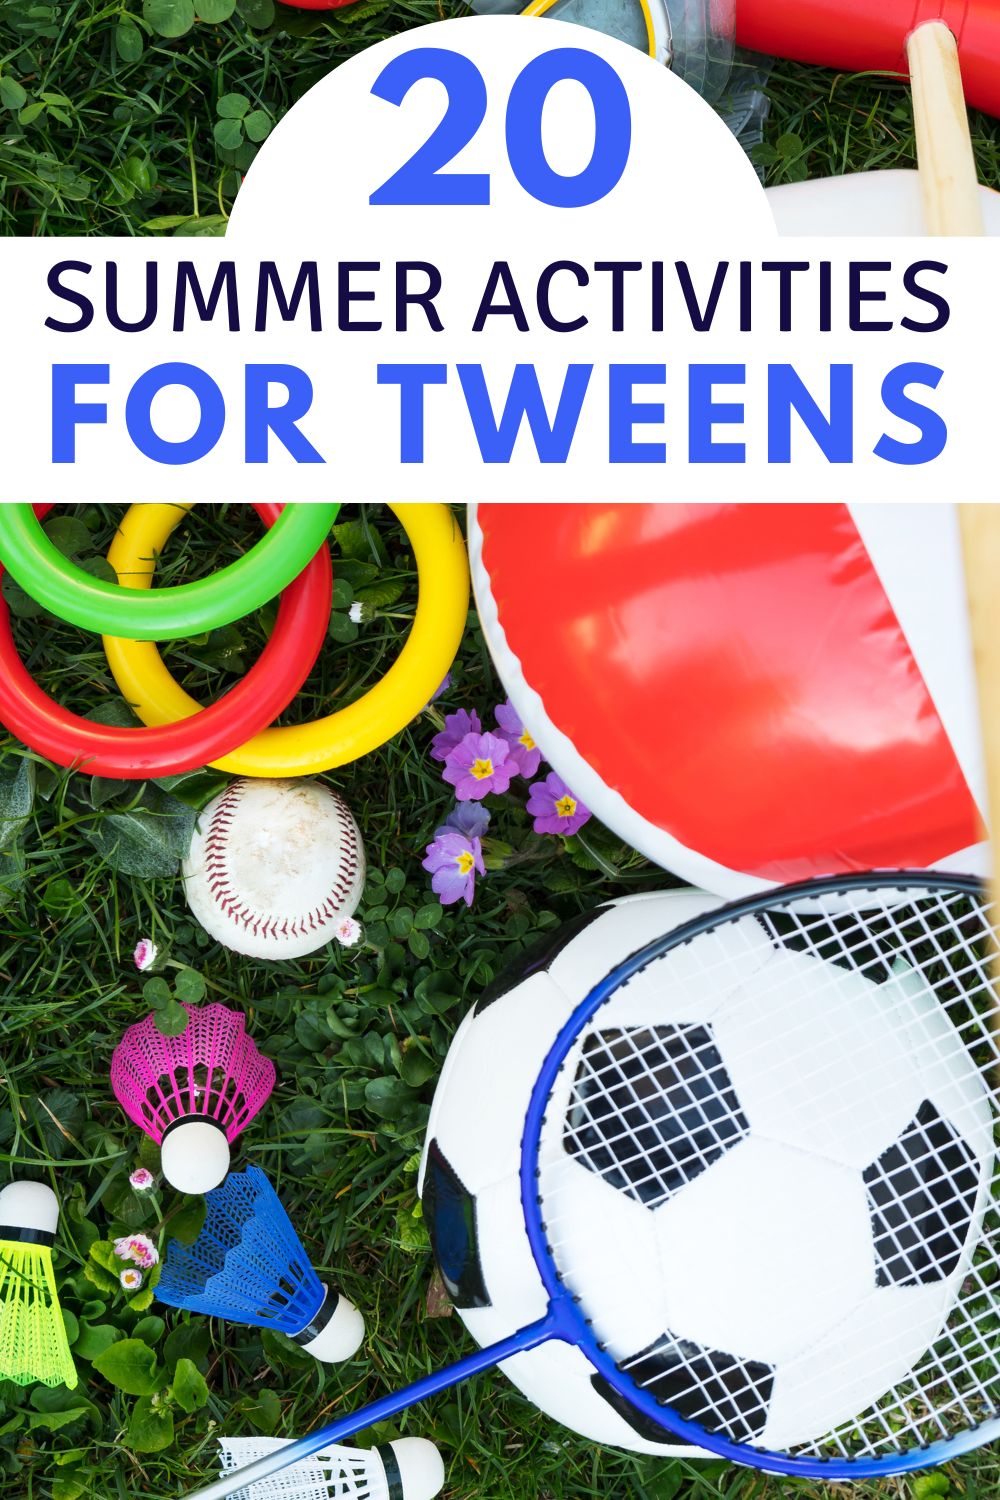 Summer activities for tweens